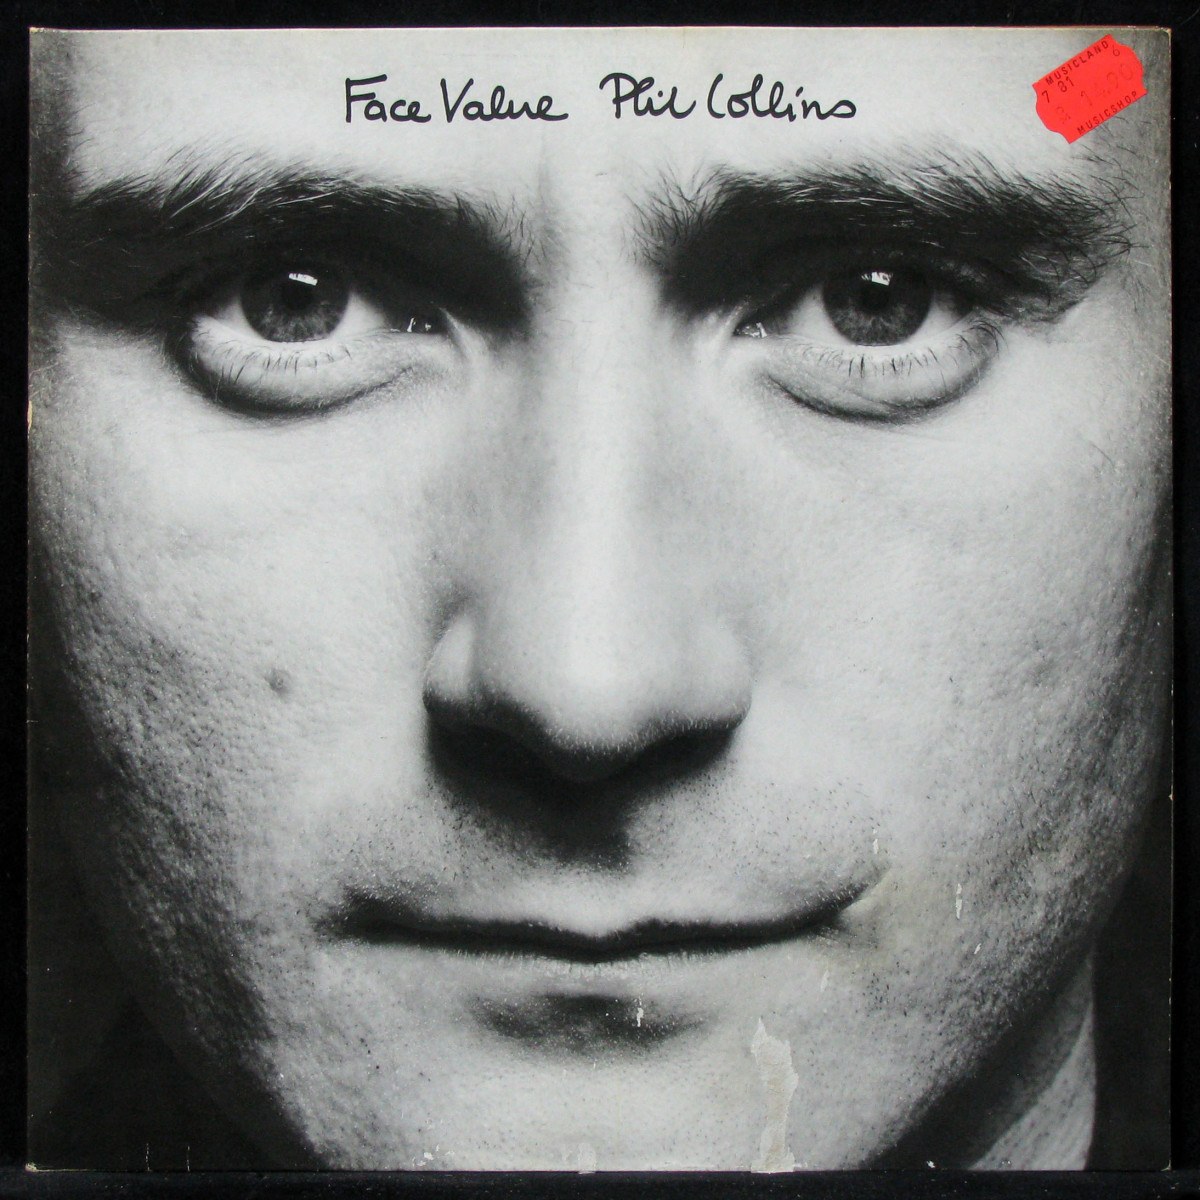 Фил коллинз альбомы. Collins Phil "face value". Phil Collins face value 1981. Фил Коллинз винил.